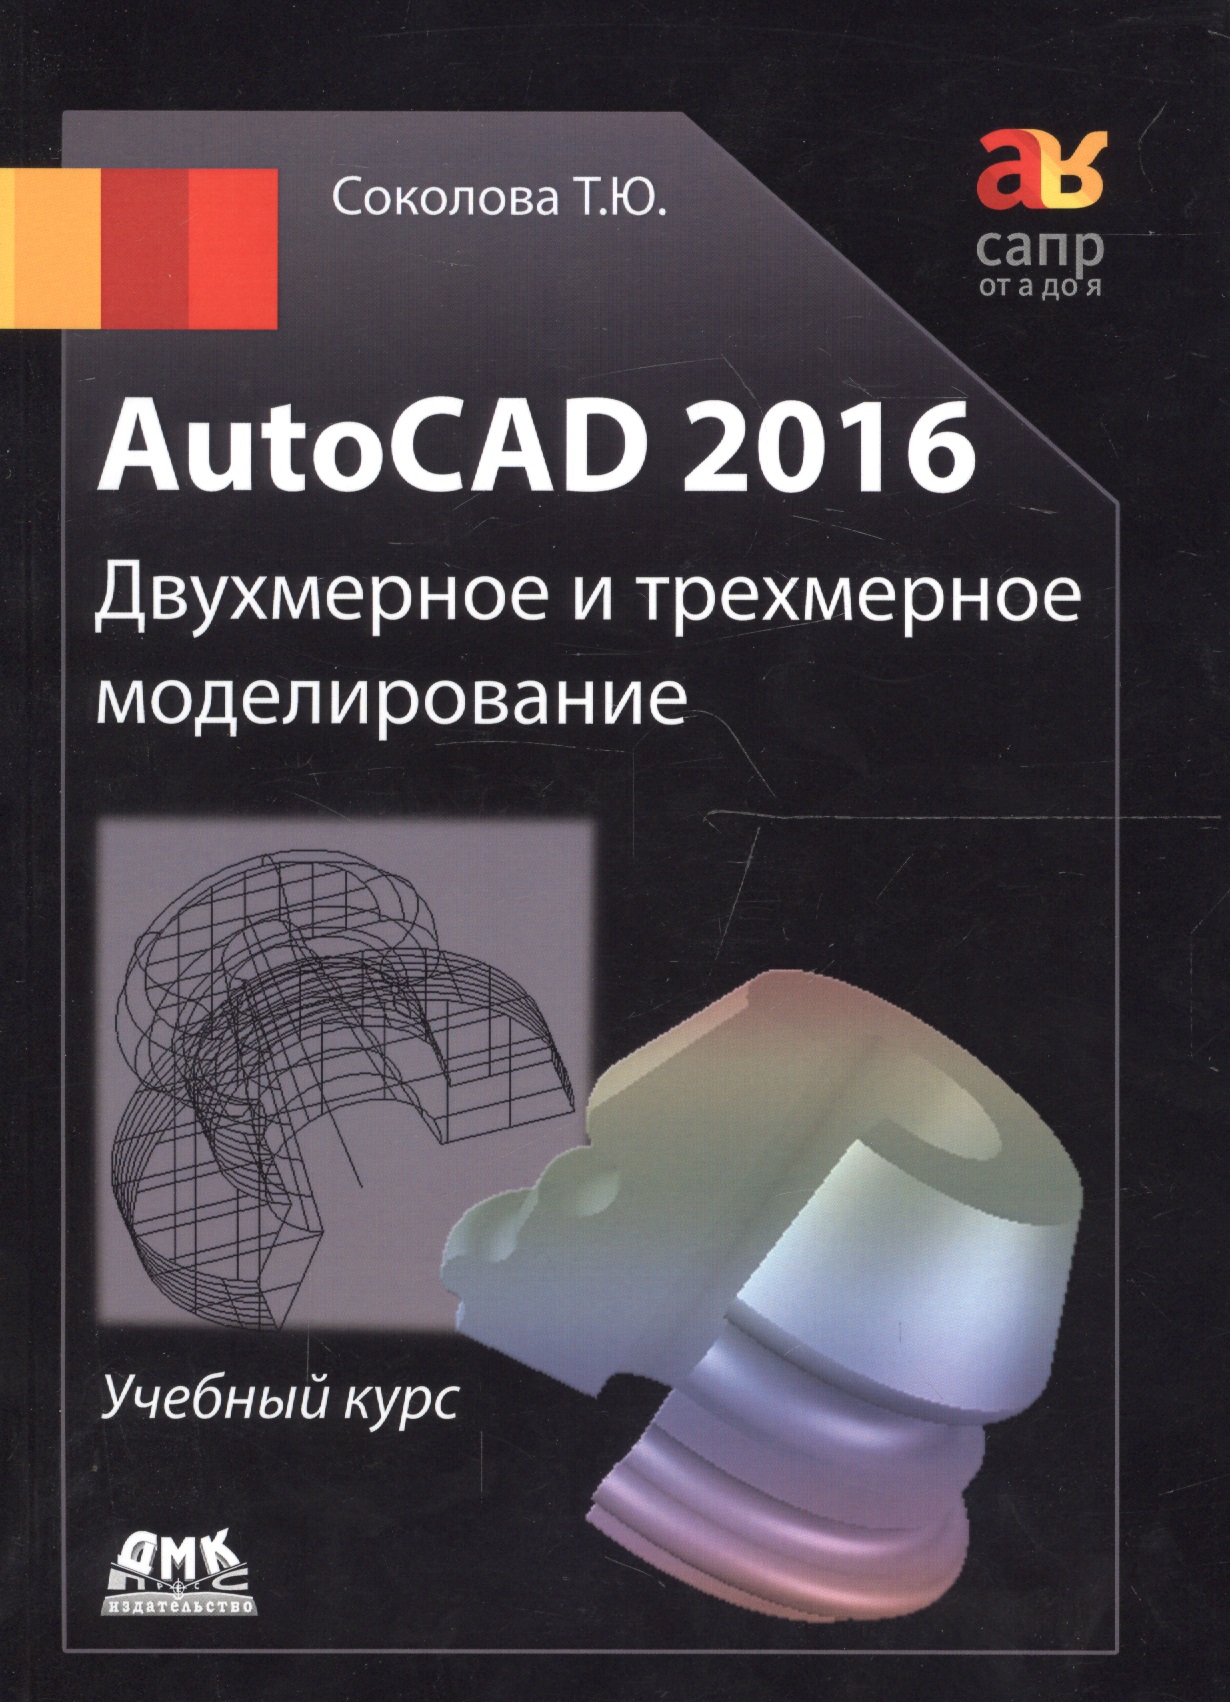 AutoCAD 2016/ Двухмерное и трехмерное моделирование. Учебный курс габидулин вилен михайлович трехмерное моделирование в autocad 2013